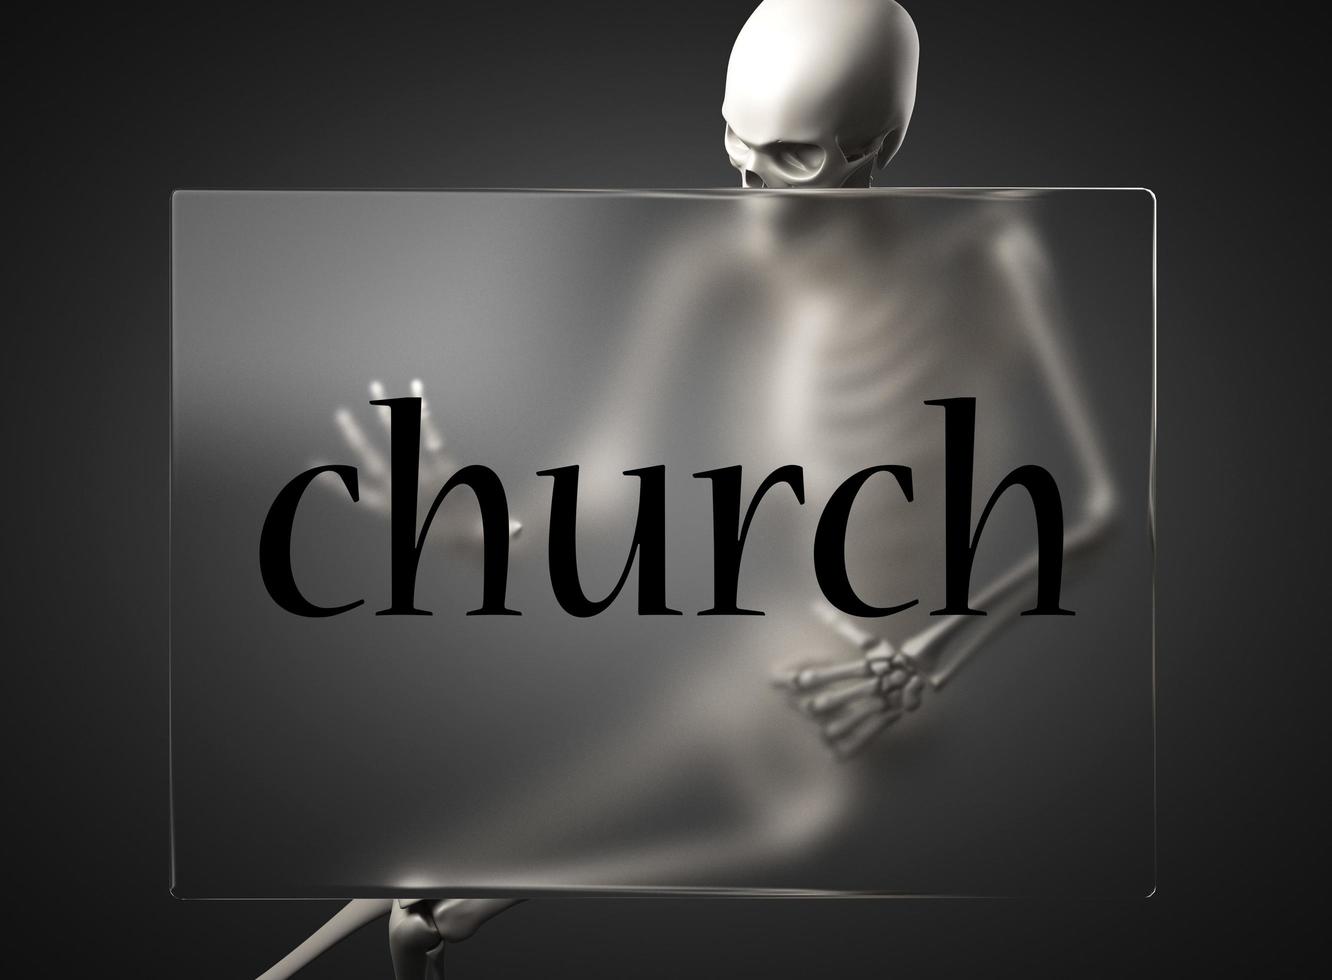 Kirchenwort auf Glas und Skelett foto